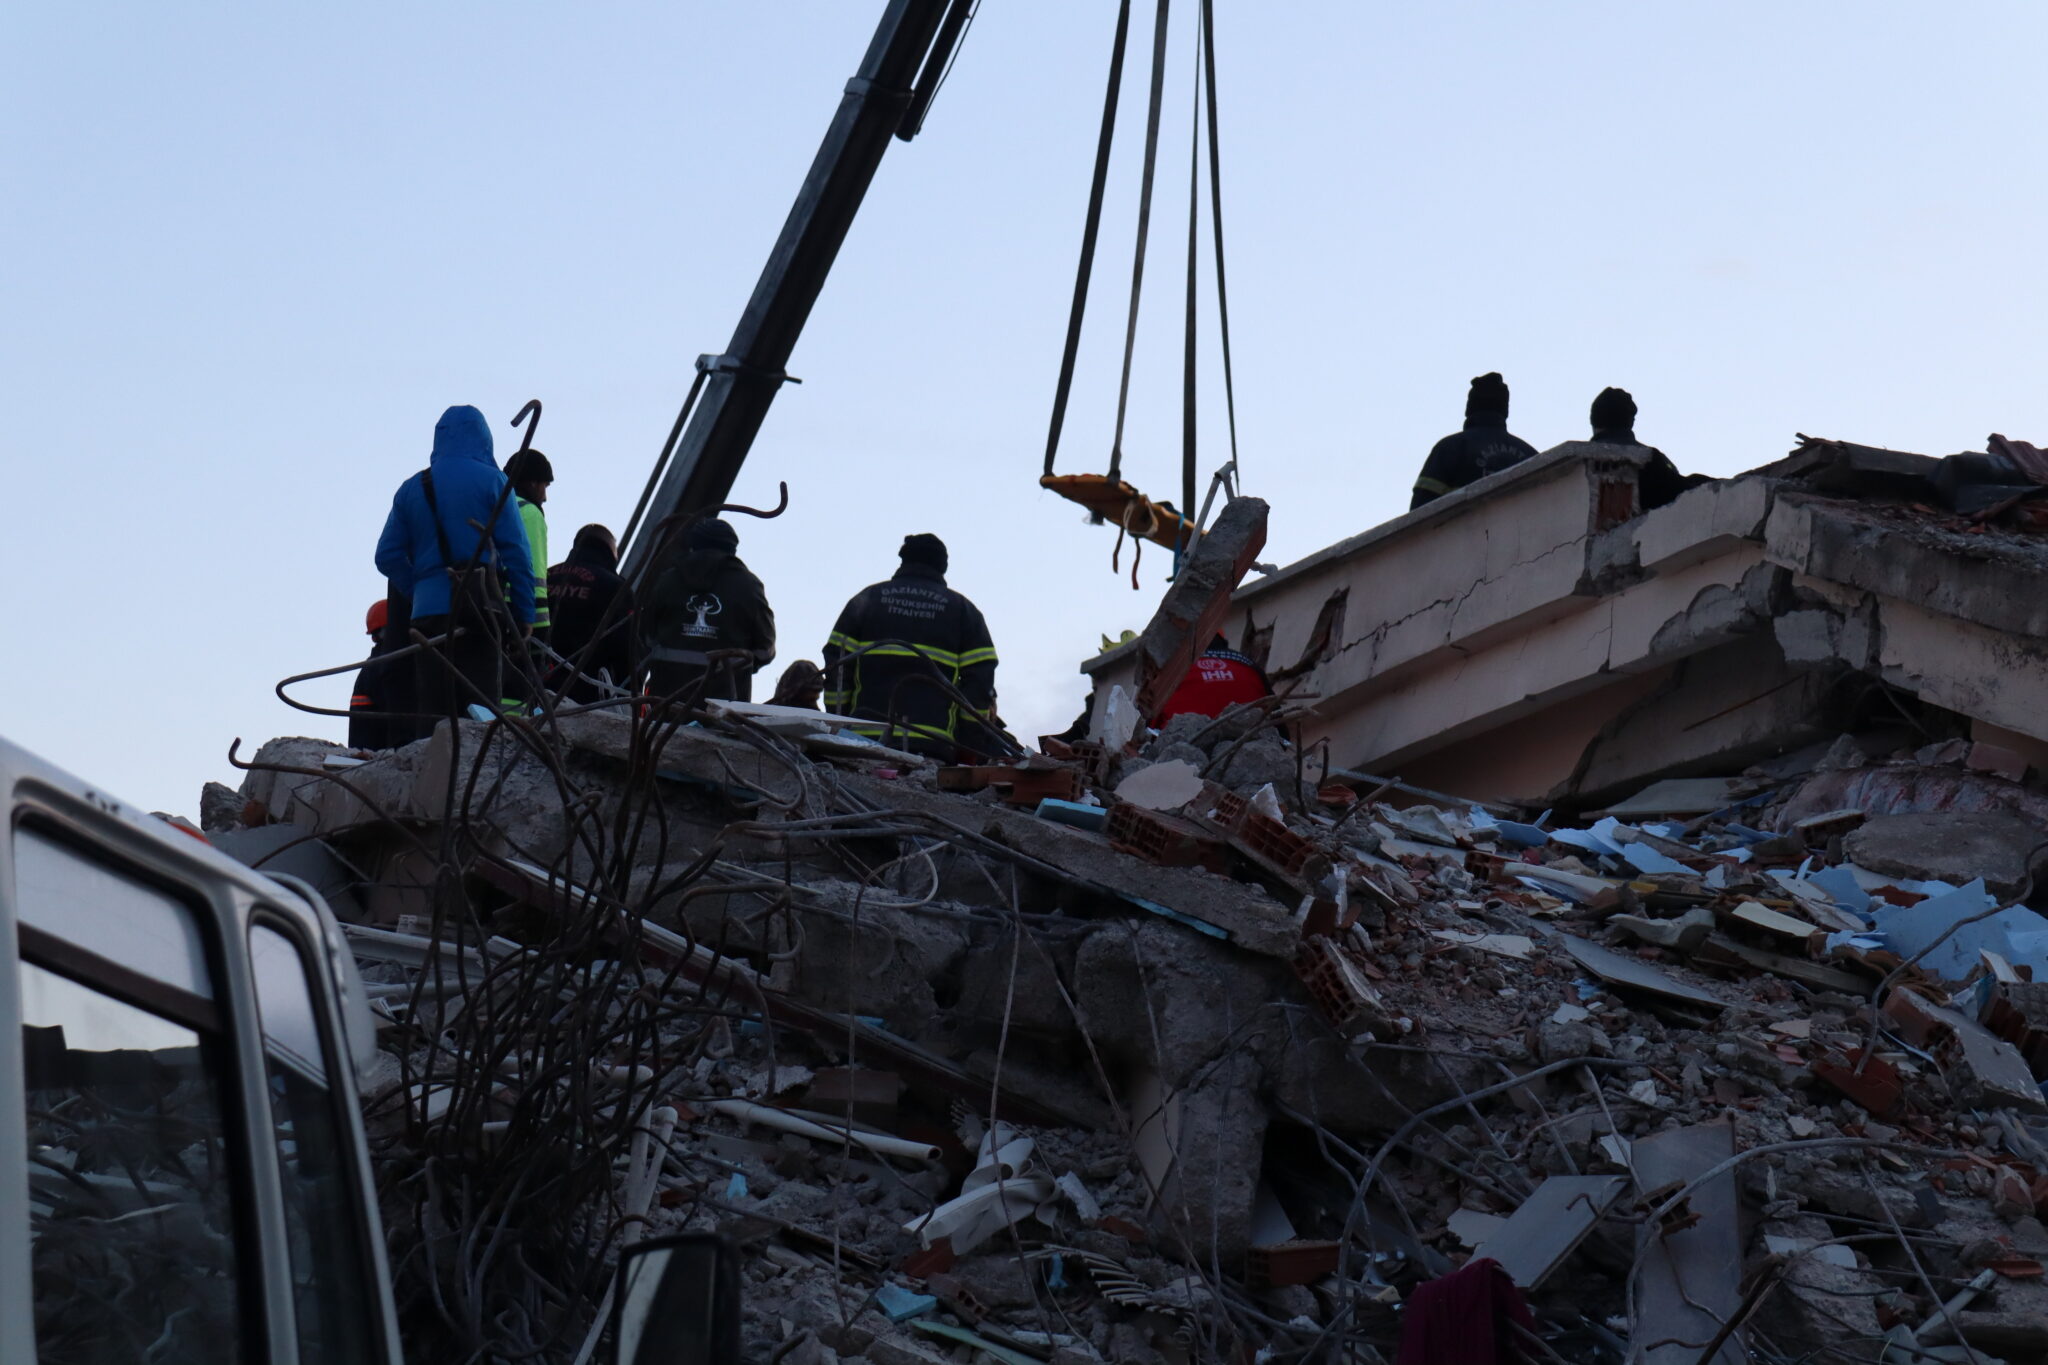 terremoto,-“in-turchia-demoliti-palazzi-con-persone-dentro”:-la-denuncia-choc-di-un-team-spagnolo